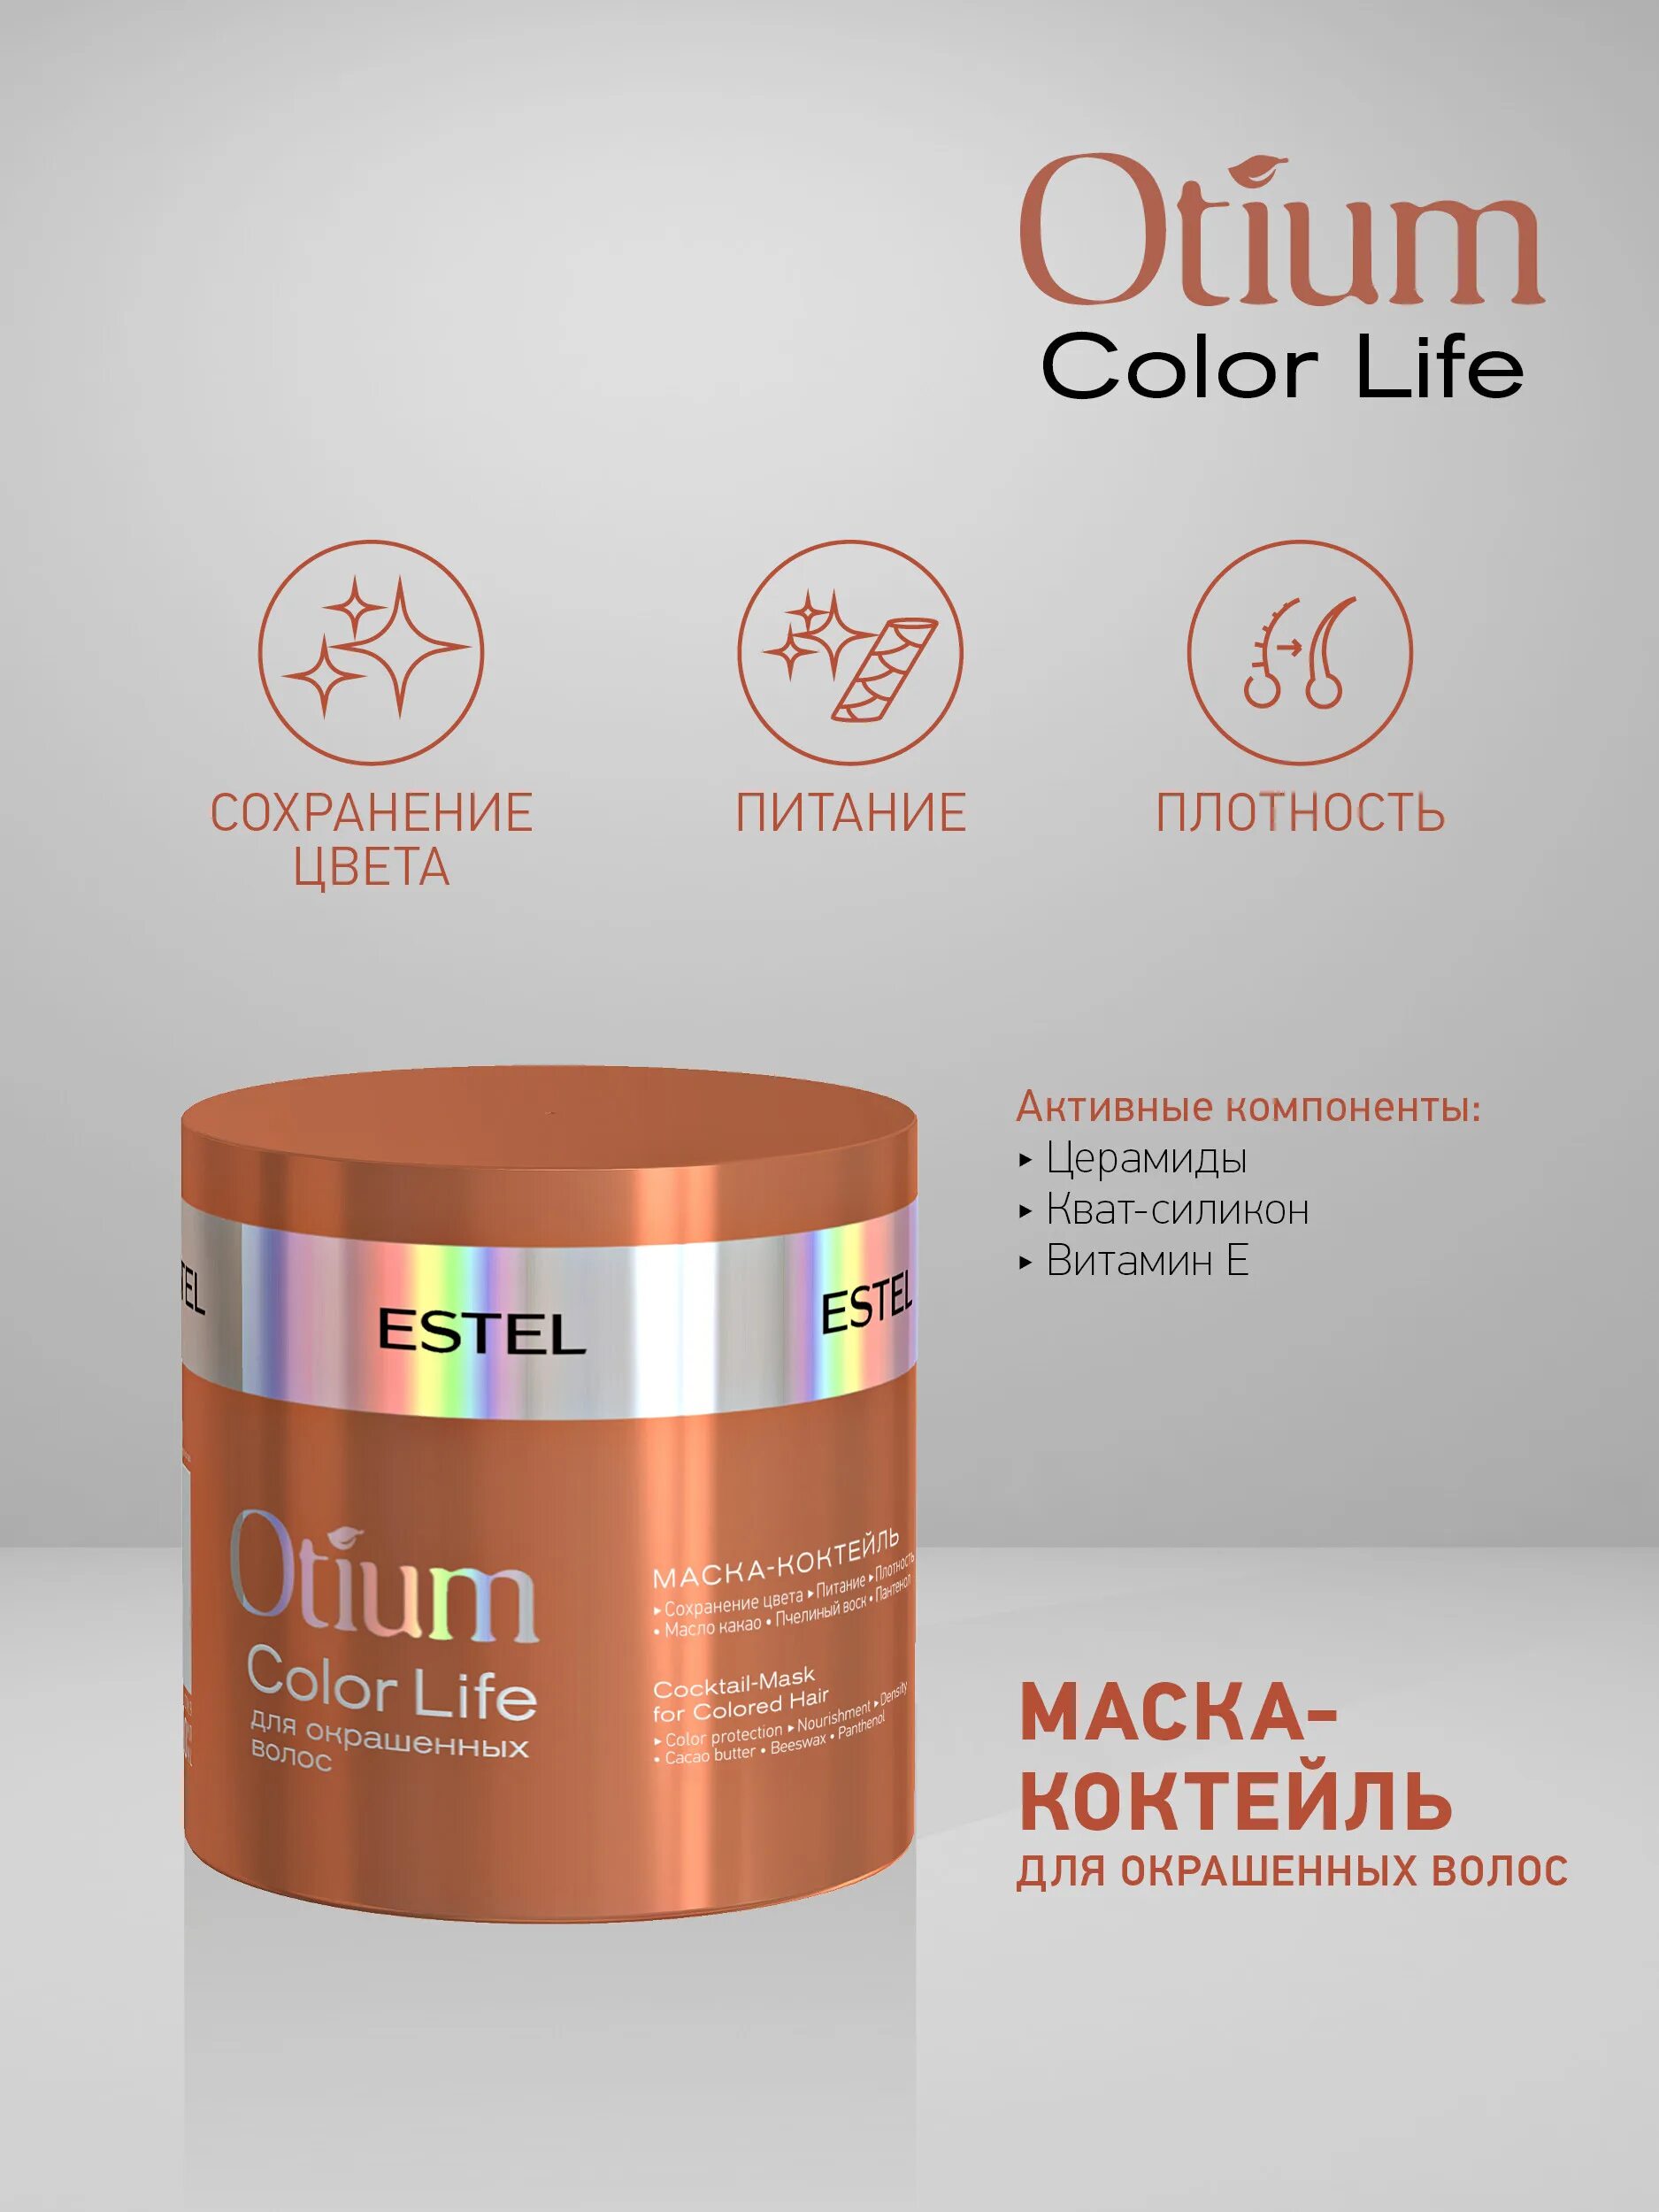 Otium color life. Estel/ маска-коктейль для окрашенных волос Otium Color Life (300 мл). Estel Otium Color Life маска. Эстель Otium Color Life. Otium Color Life для окрашенных волос.